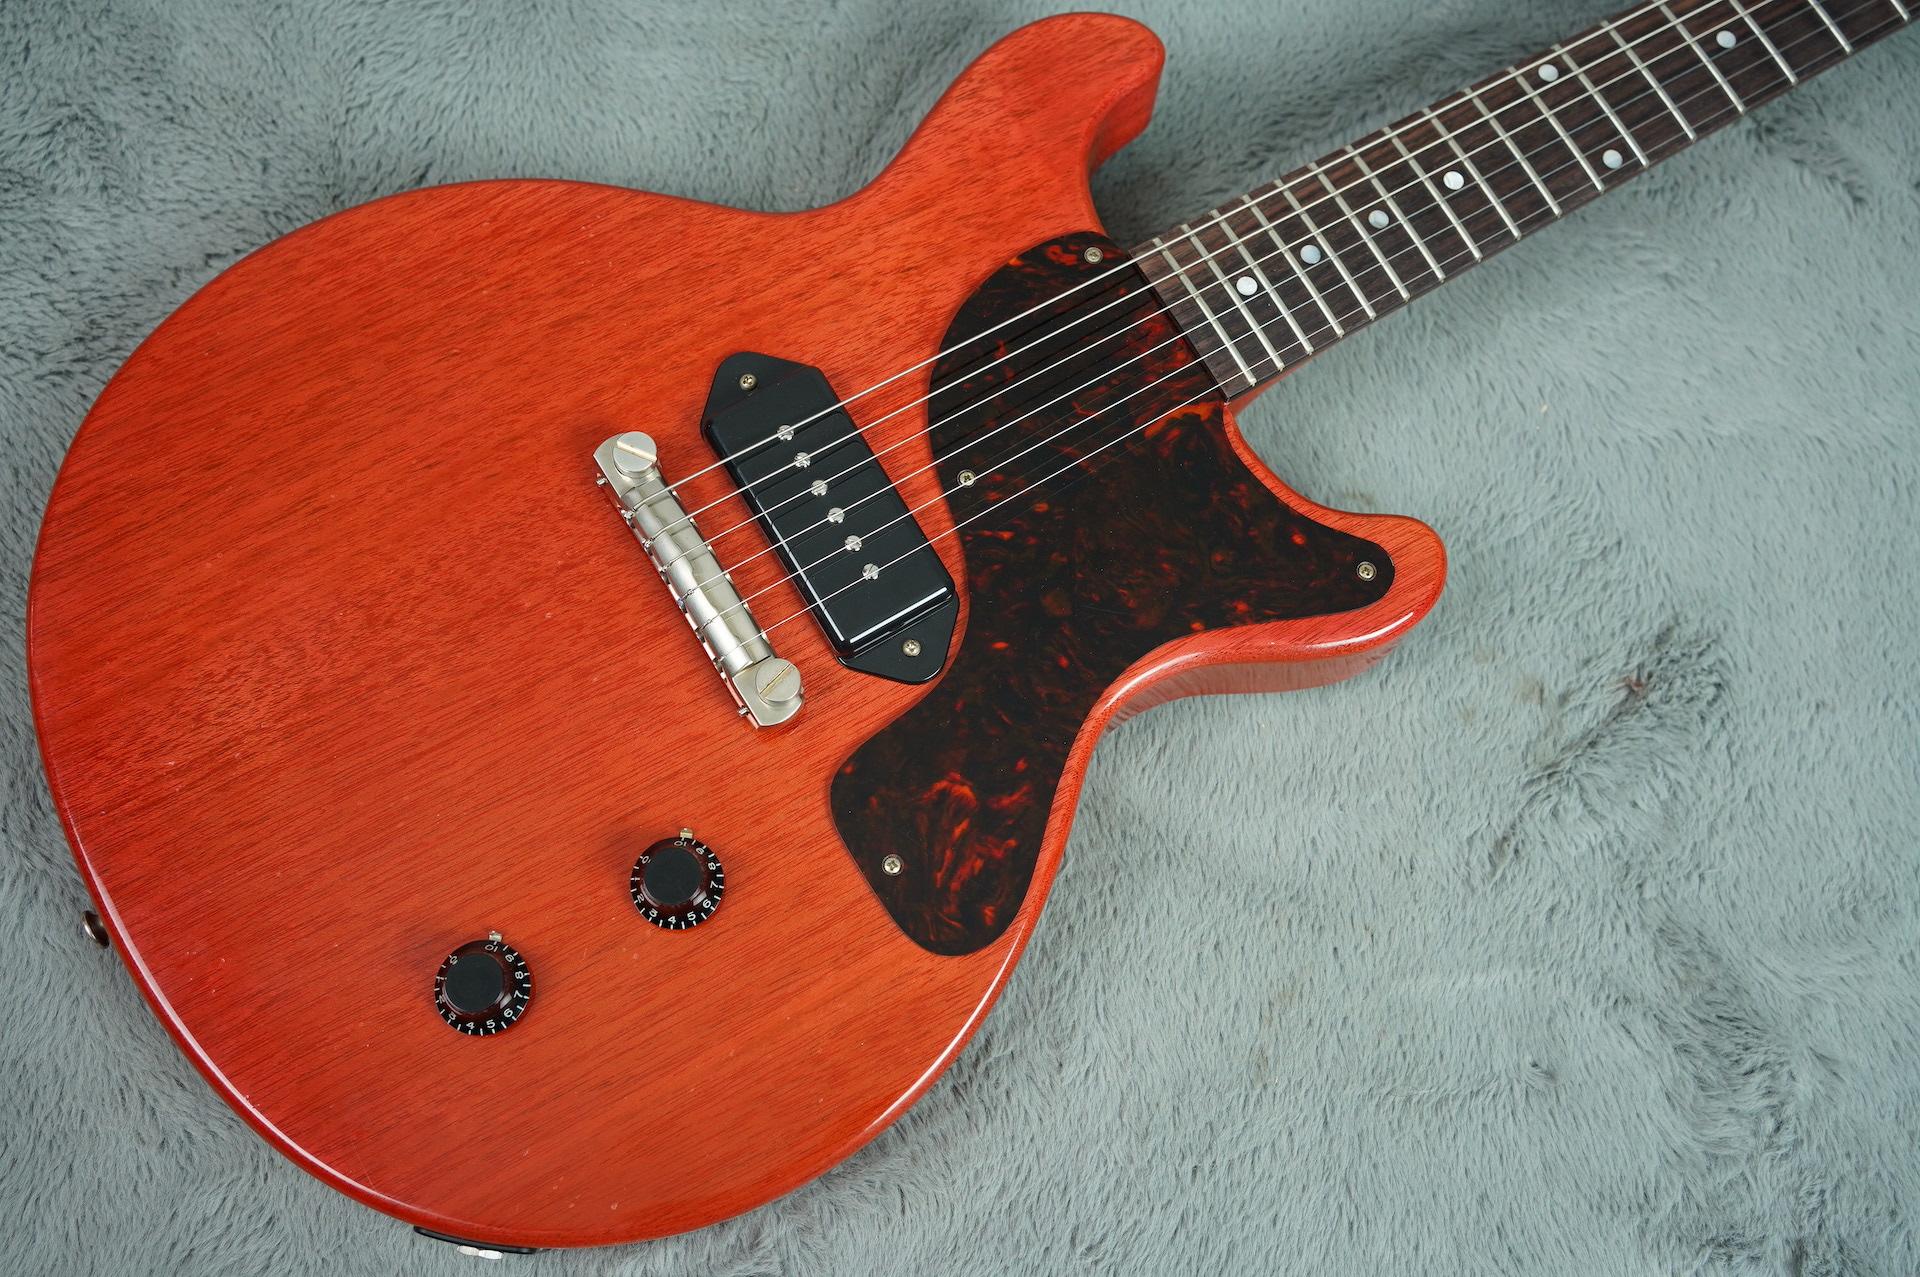 Ivison Guitars The '59 DC Cherry